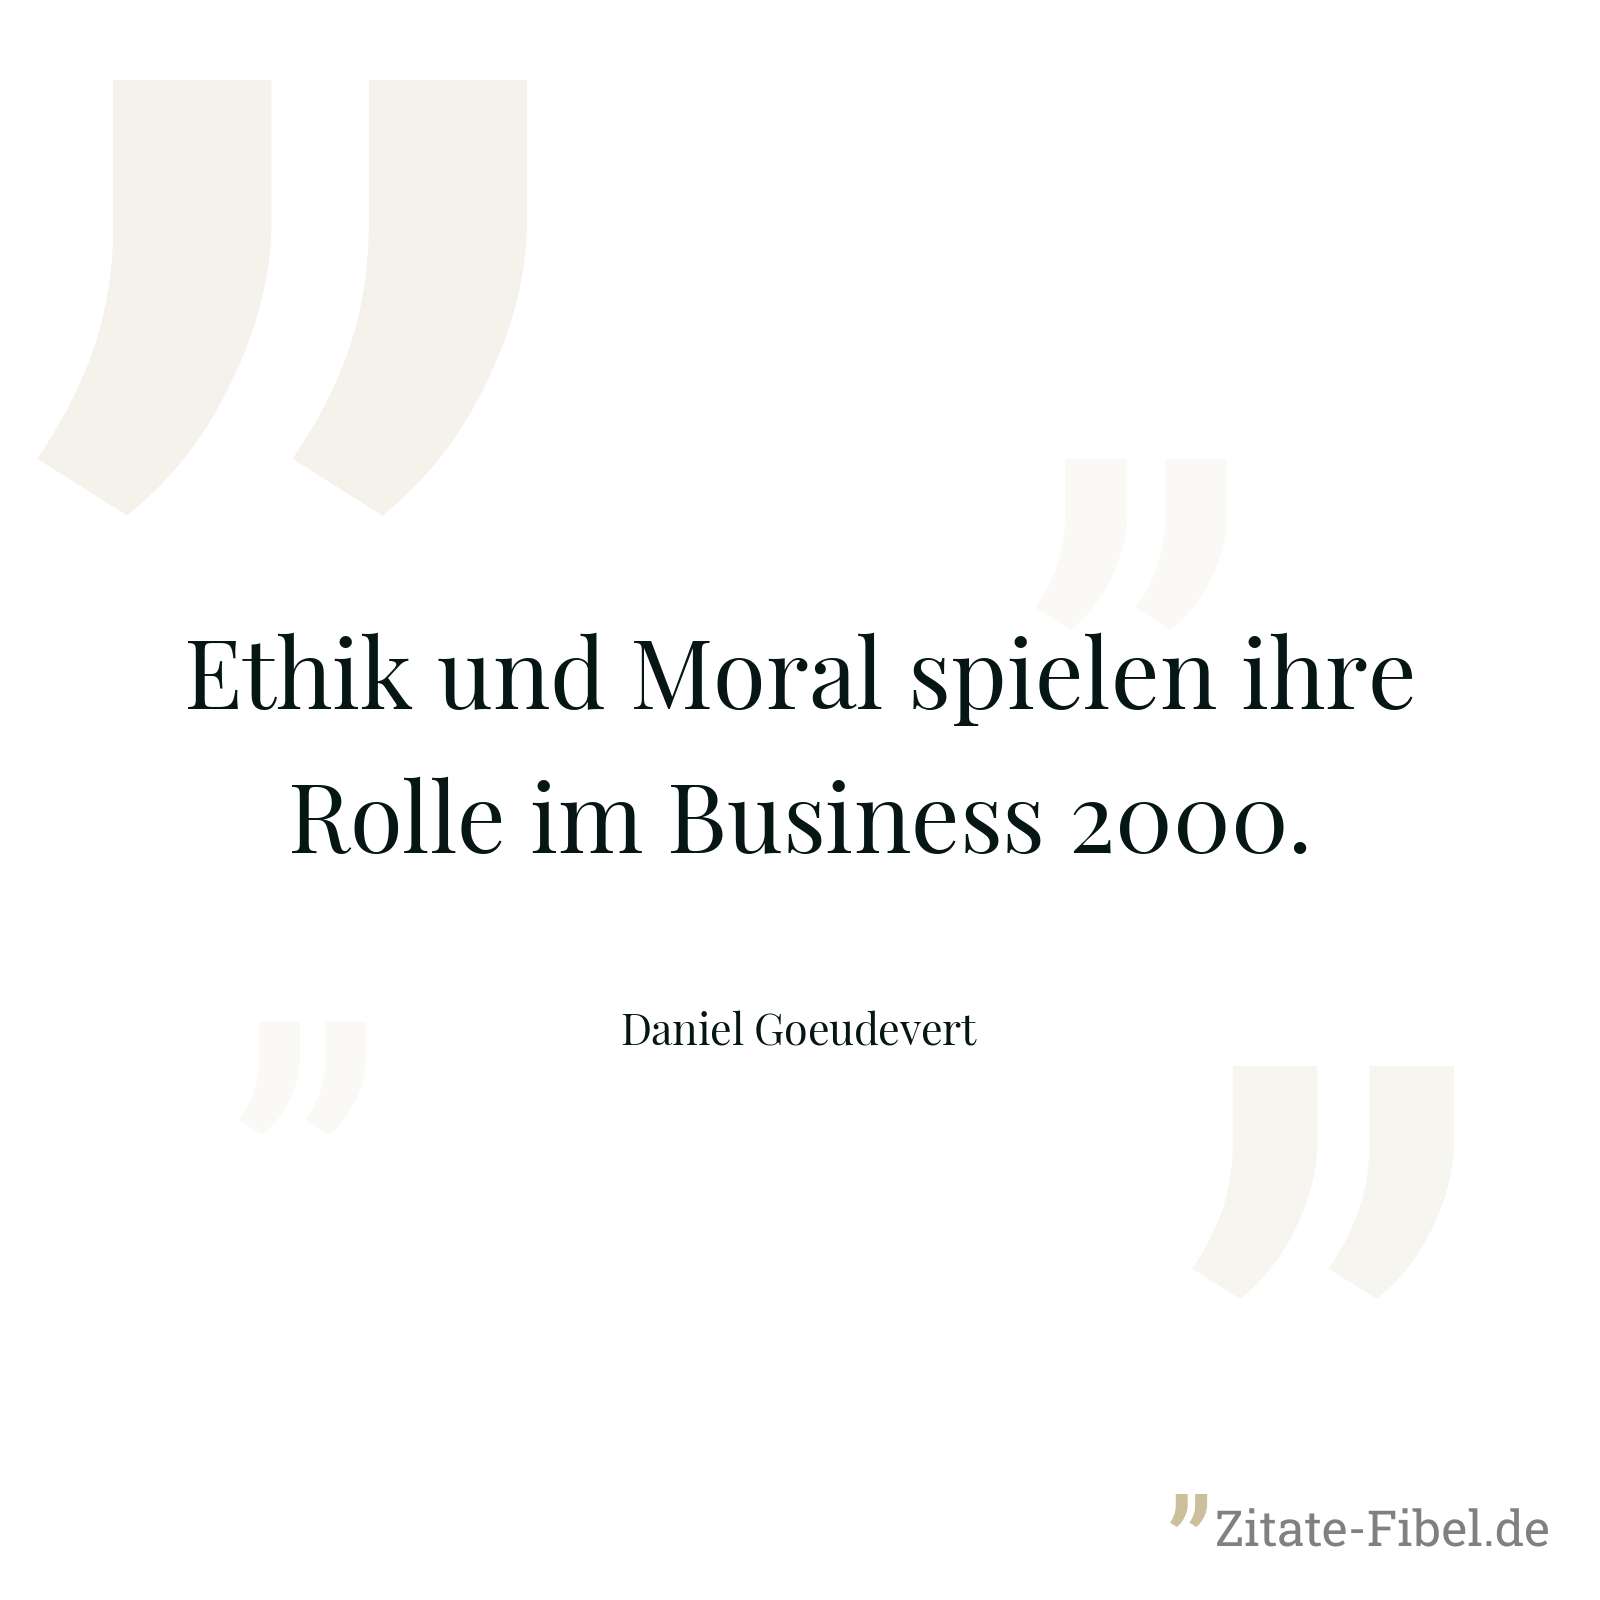 Ethik und Moral spielen ihre Rolle im Business 2000. - Daniel Goeudevert